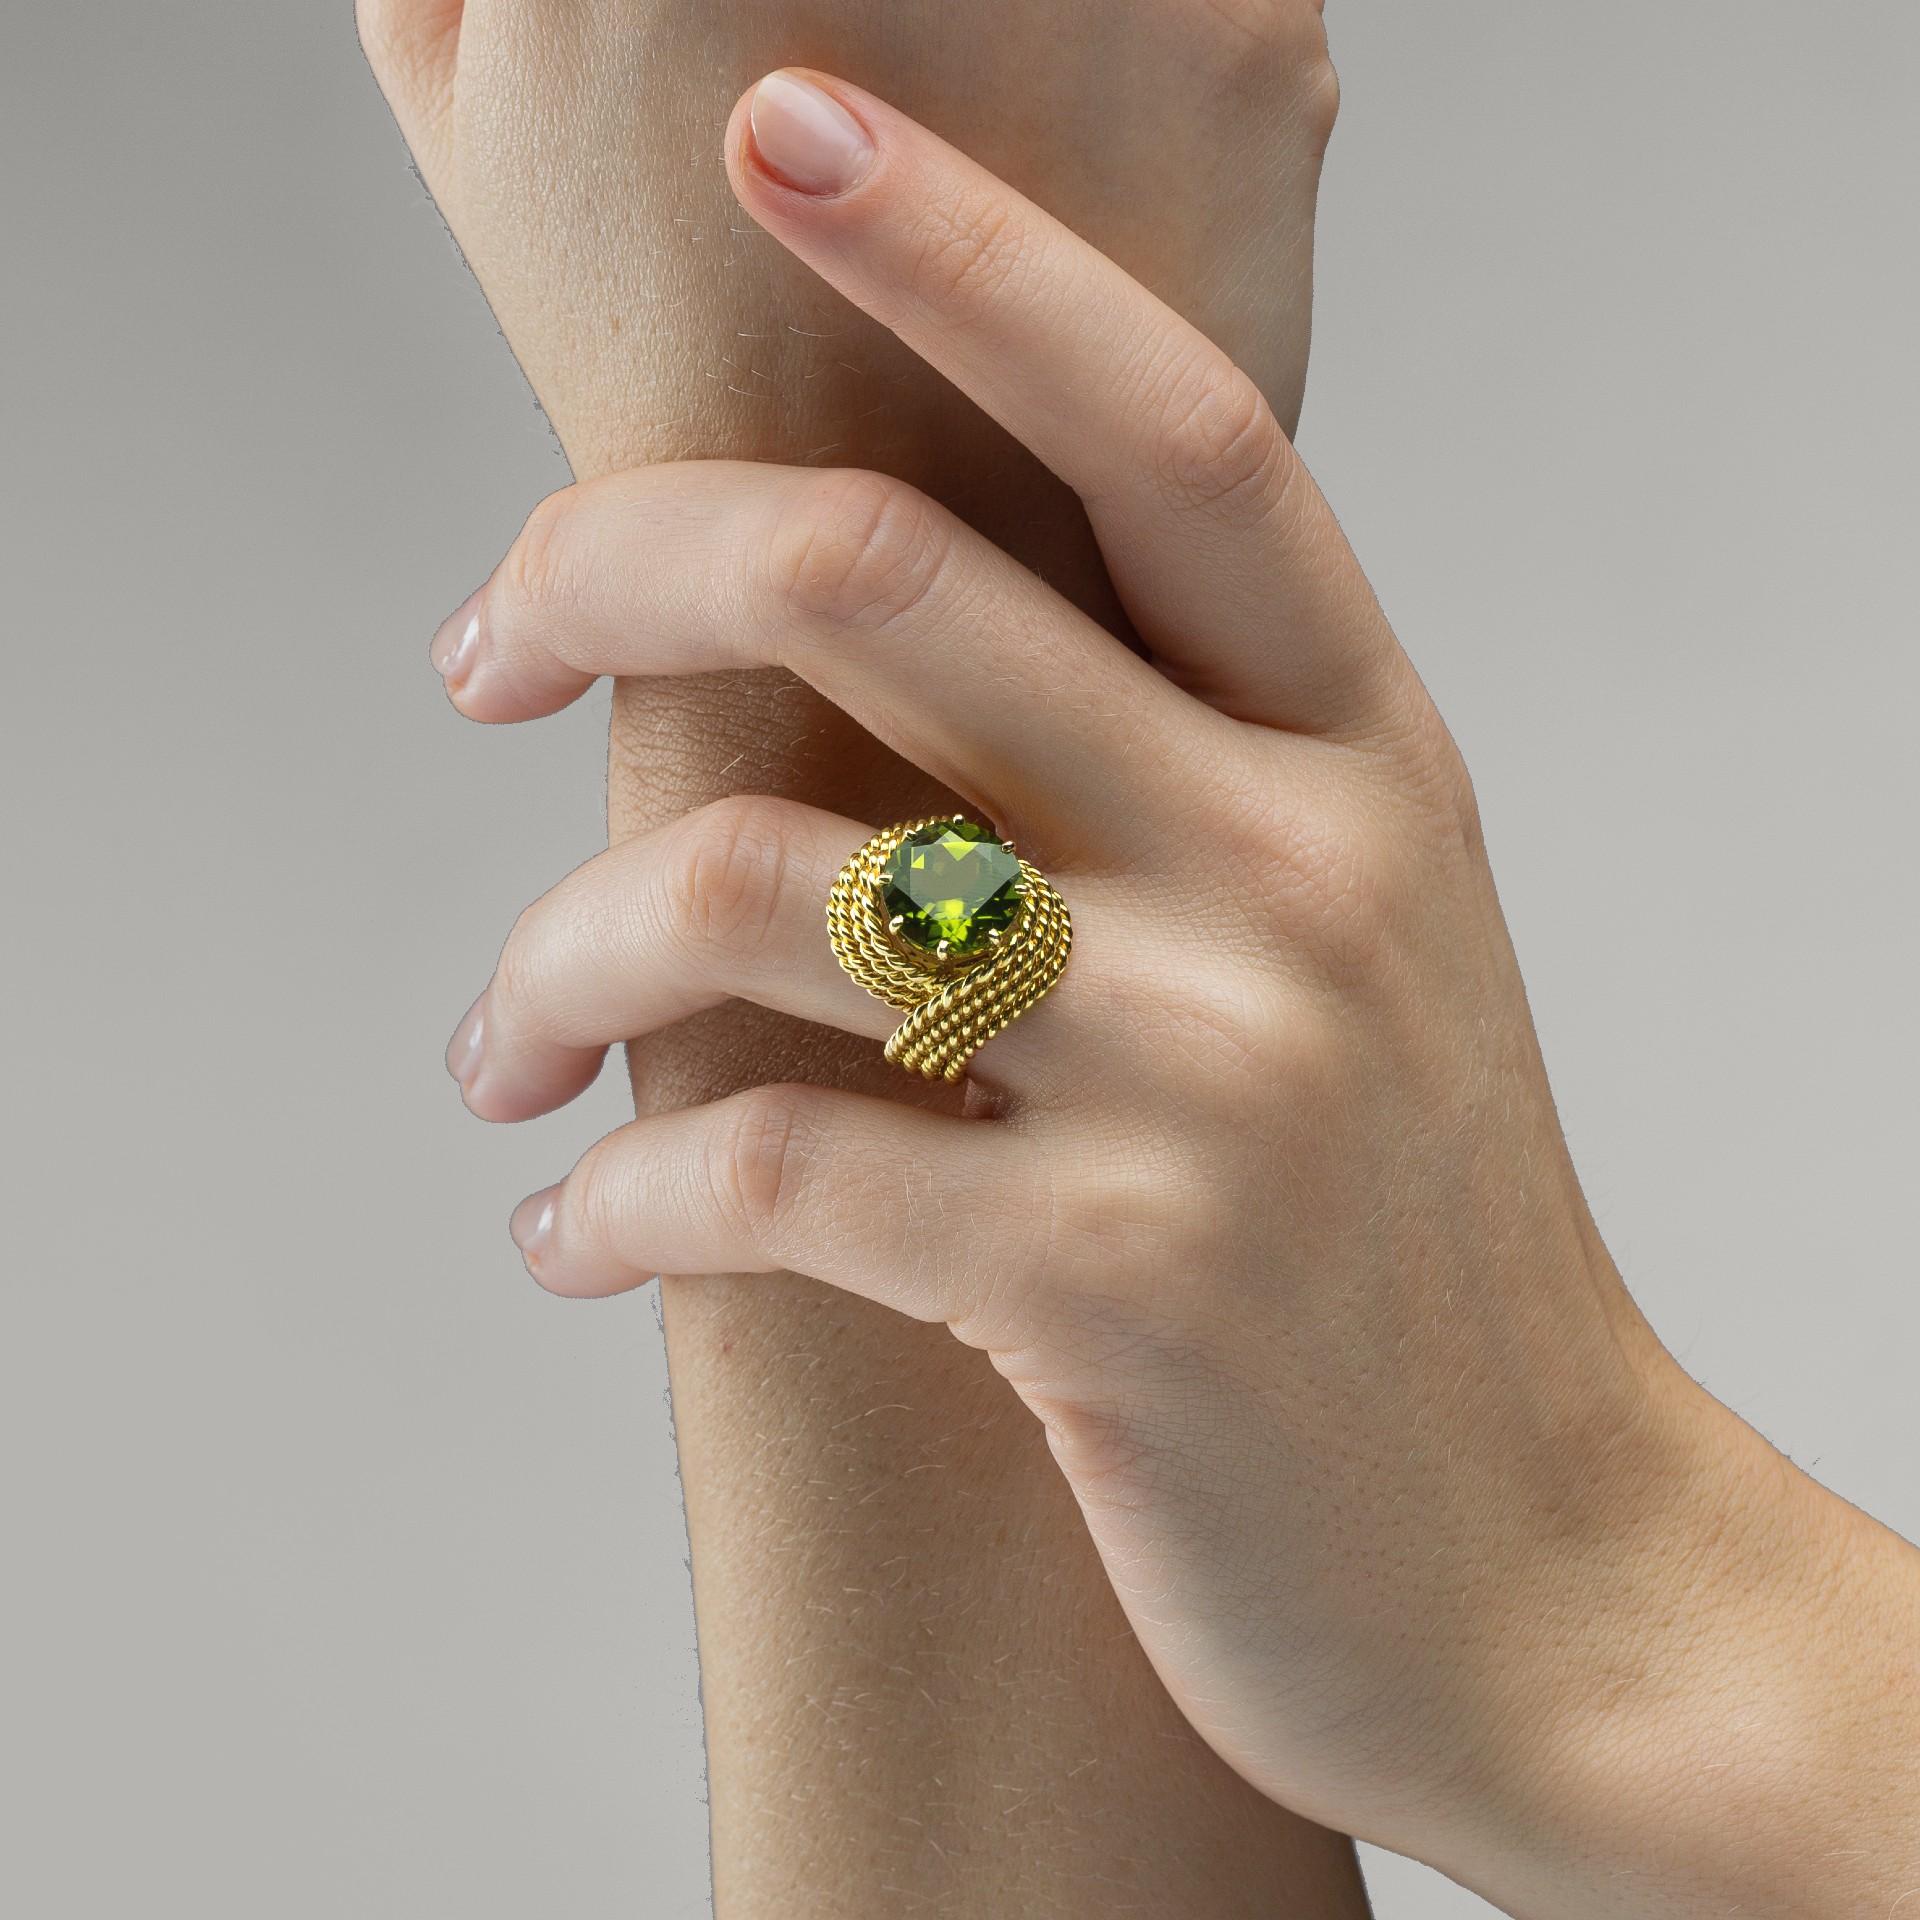 Alex Jona Design-Kollektion, handgefertigt in Italien, Ring Nou Nou aus 18 Karat Gelbgold mit einem Peridot von 3,82 Karat im Rundschliff, umwickelt mit gedrehten Goldfäden.

Die Juwelen von Alex Jona zeichnen sich nicht nur durch ihr besonderes